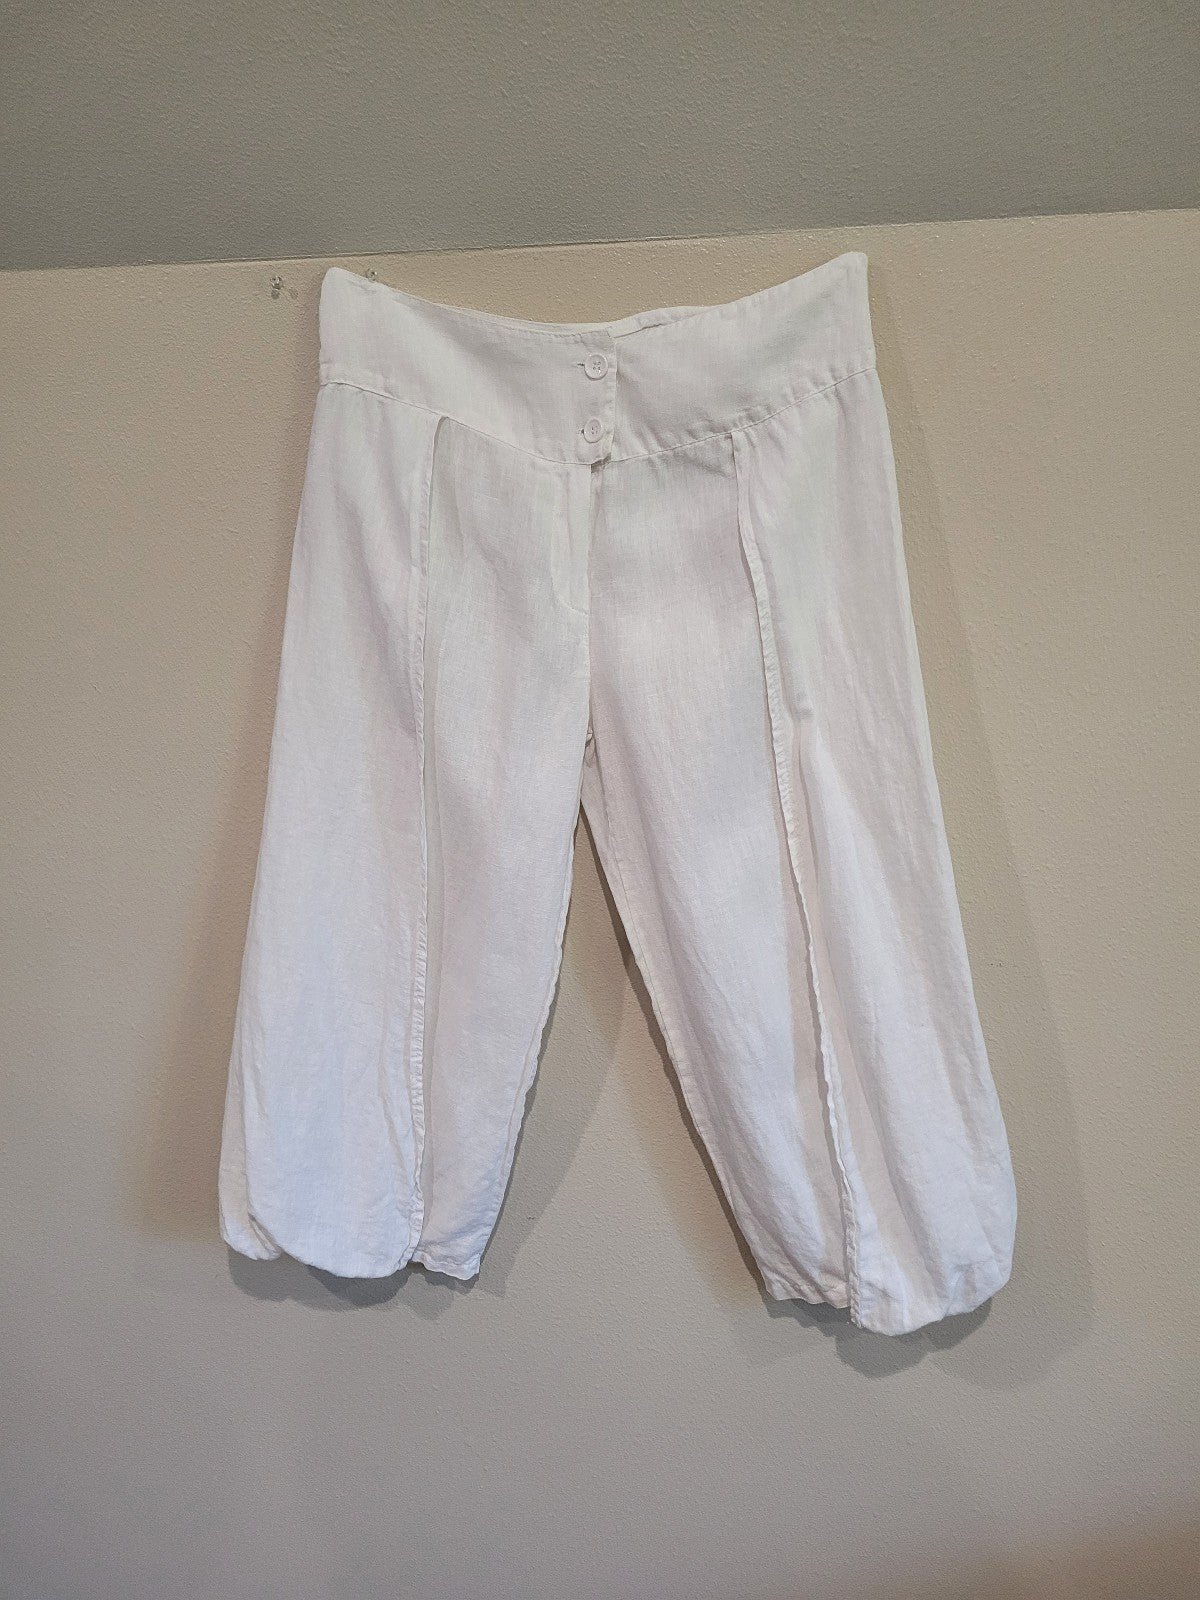 Simple Gemma Ricceri White Linen faux wrap pant. Womens